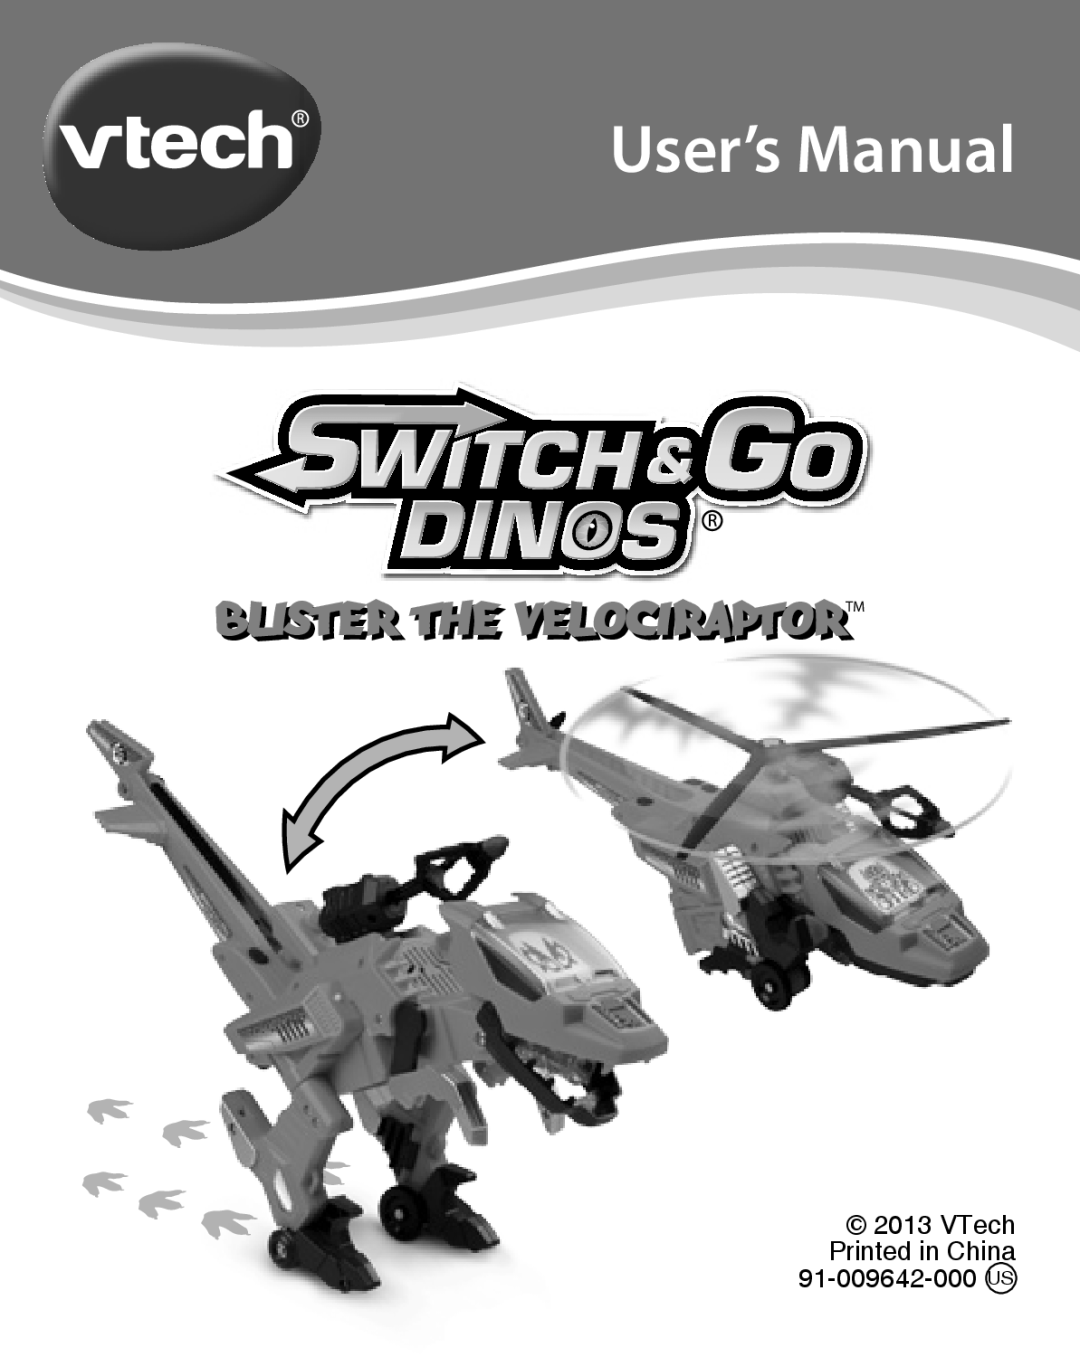 VTech user manual User’s Manual, Blisteri The Velociraptori Tm, VTech Printed in China 91-009642-000 US 